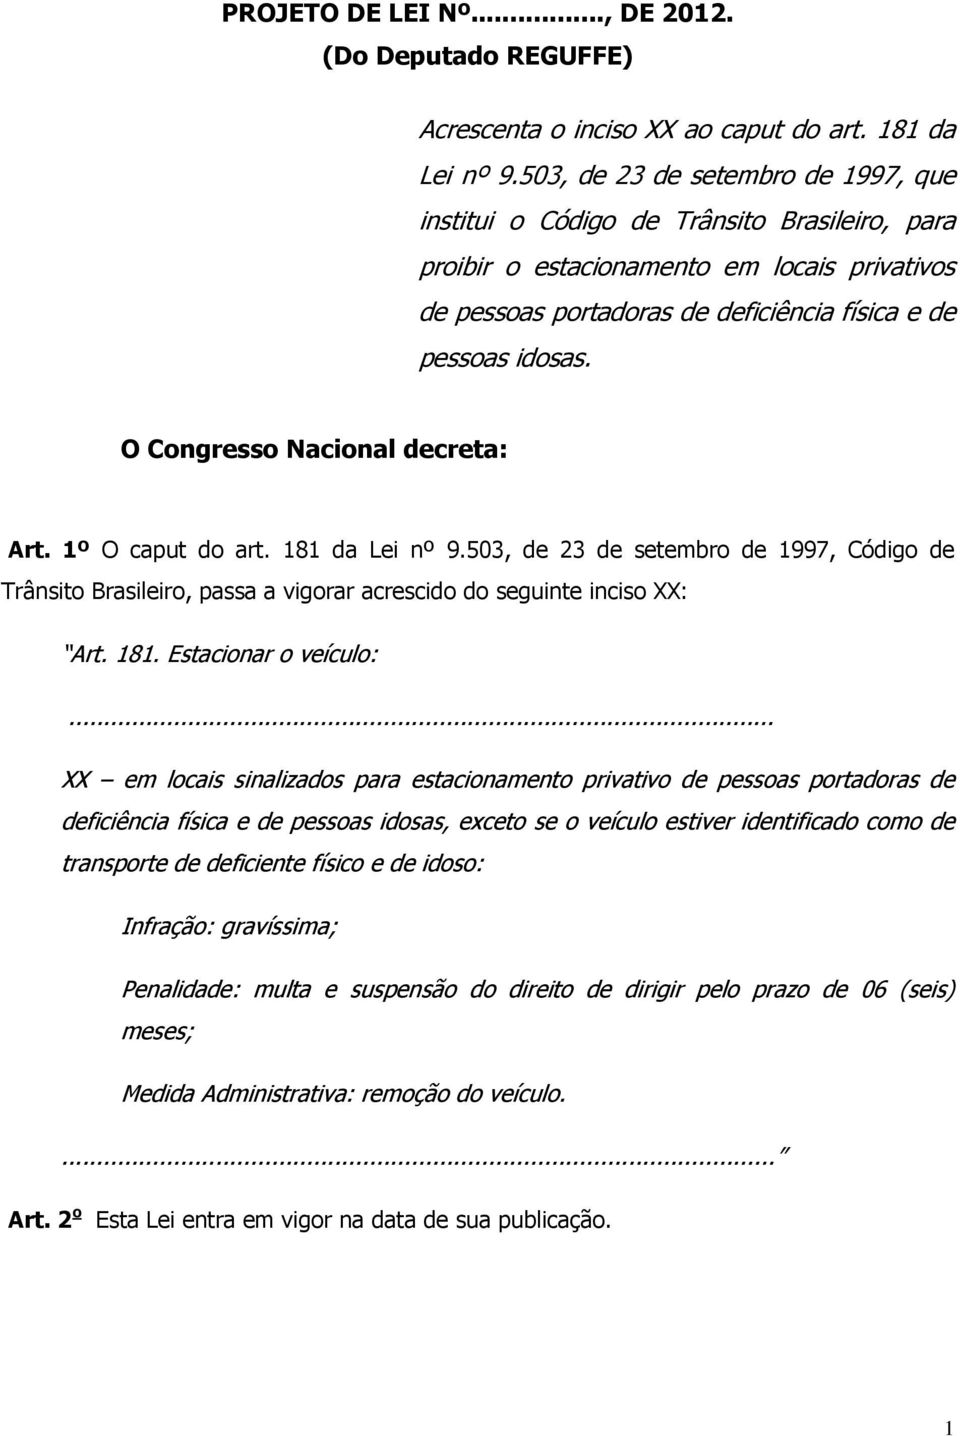 O Congresso Nacional decreta: Art. 1º O caput do art. 181 da Lei nº 9.503, de 23 de setembro de 1997, Código de Trânsito Brasileiro, passa a vigorar acrescido do seguinte inciso XX: Art. 181. Estacionar o veículo:.